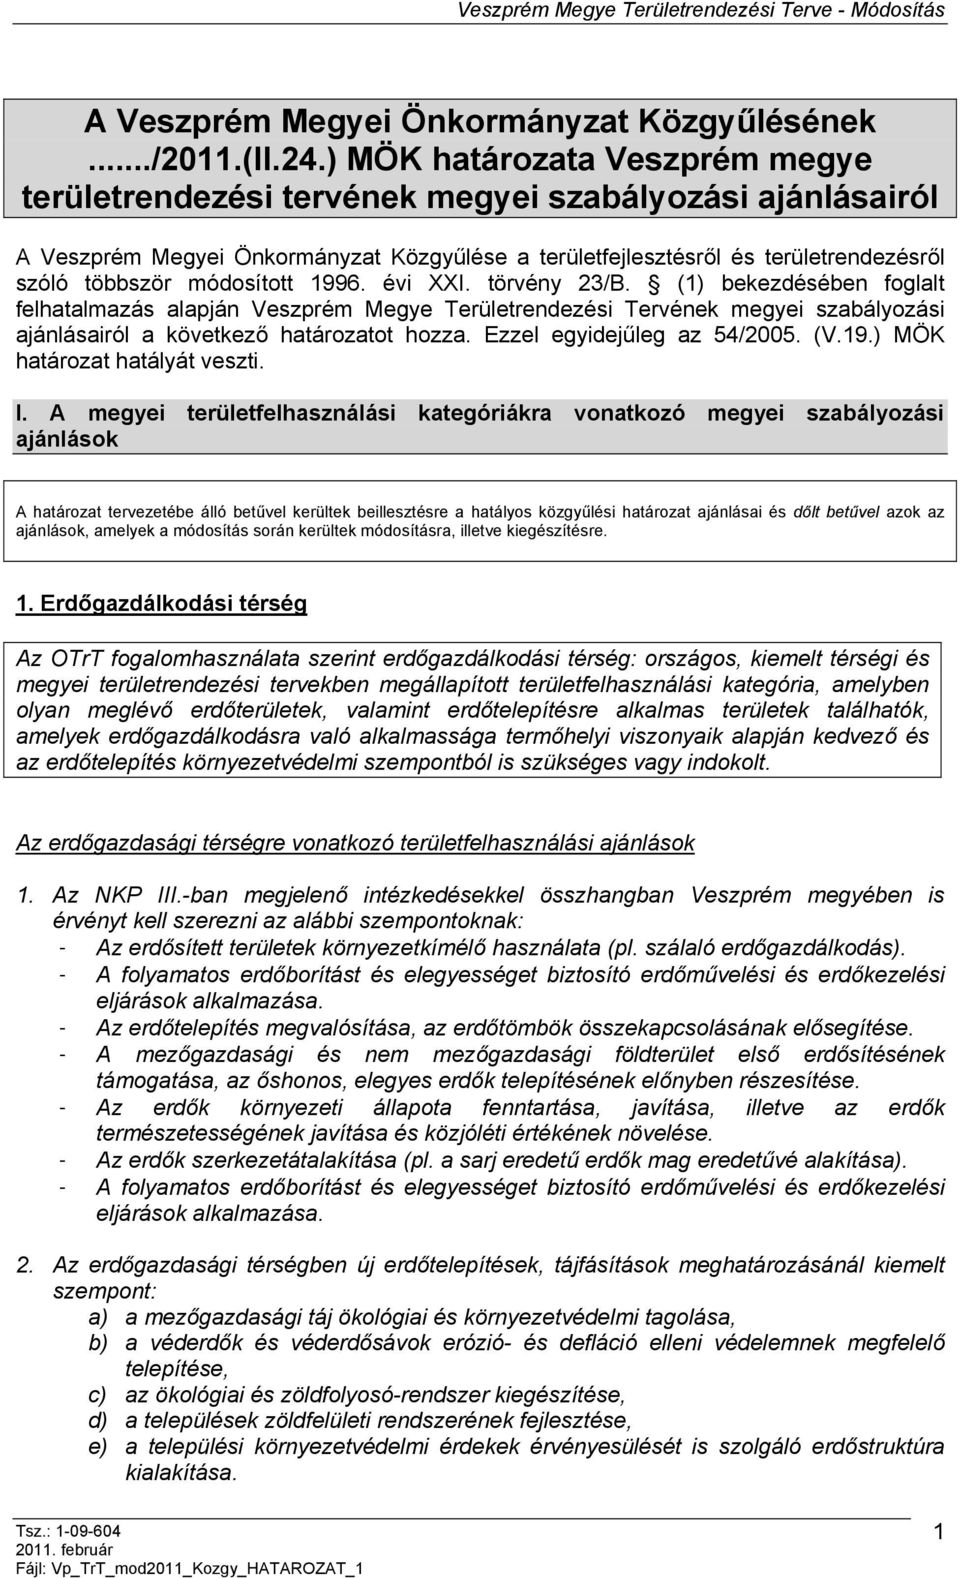 módosított 1996. évi XXI. törvény 23/B. (1) bekezdésében foglalt felhatalmazás alapján Veszprém Megye Területrendezési Tervének megyei szabályozási ajánlásairól a következő határozatot hozza.